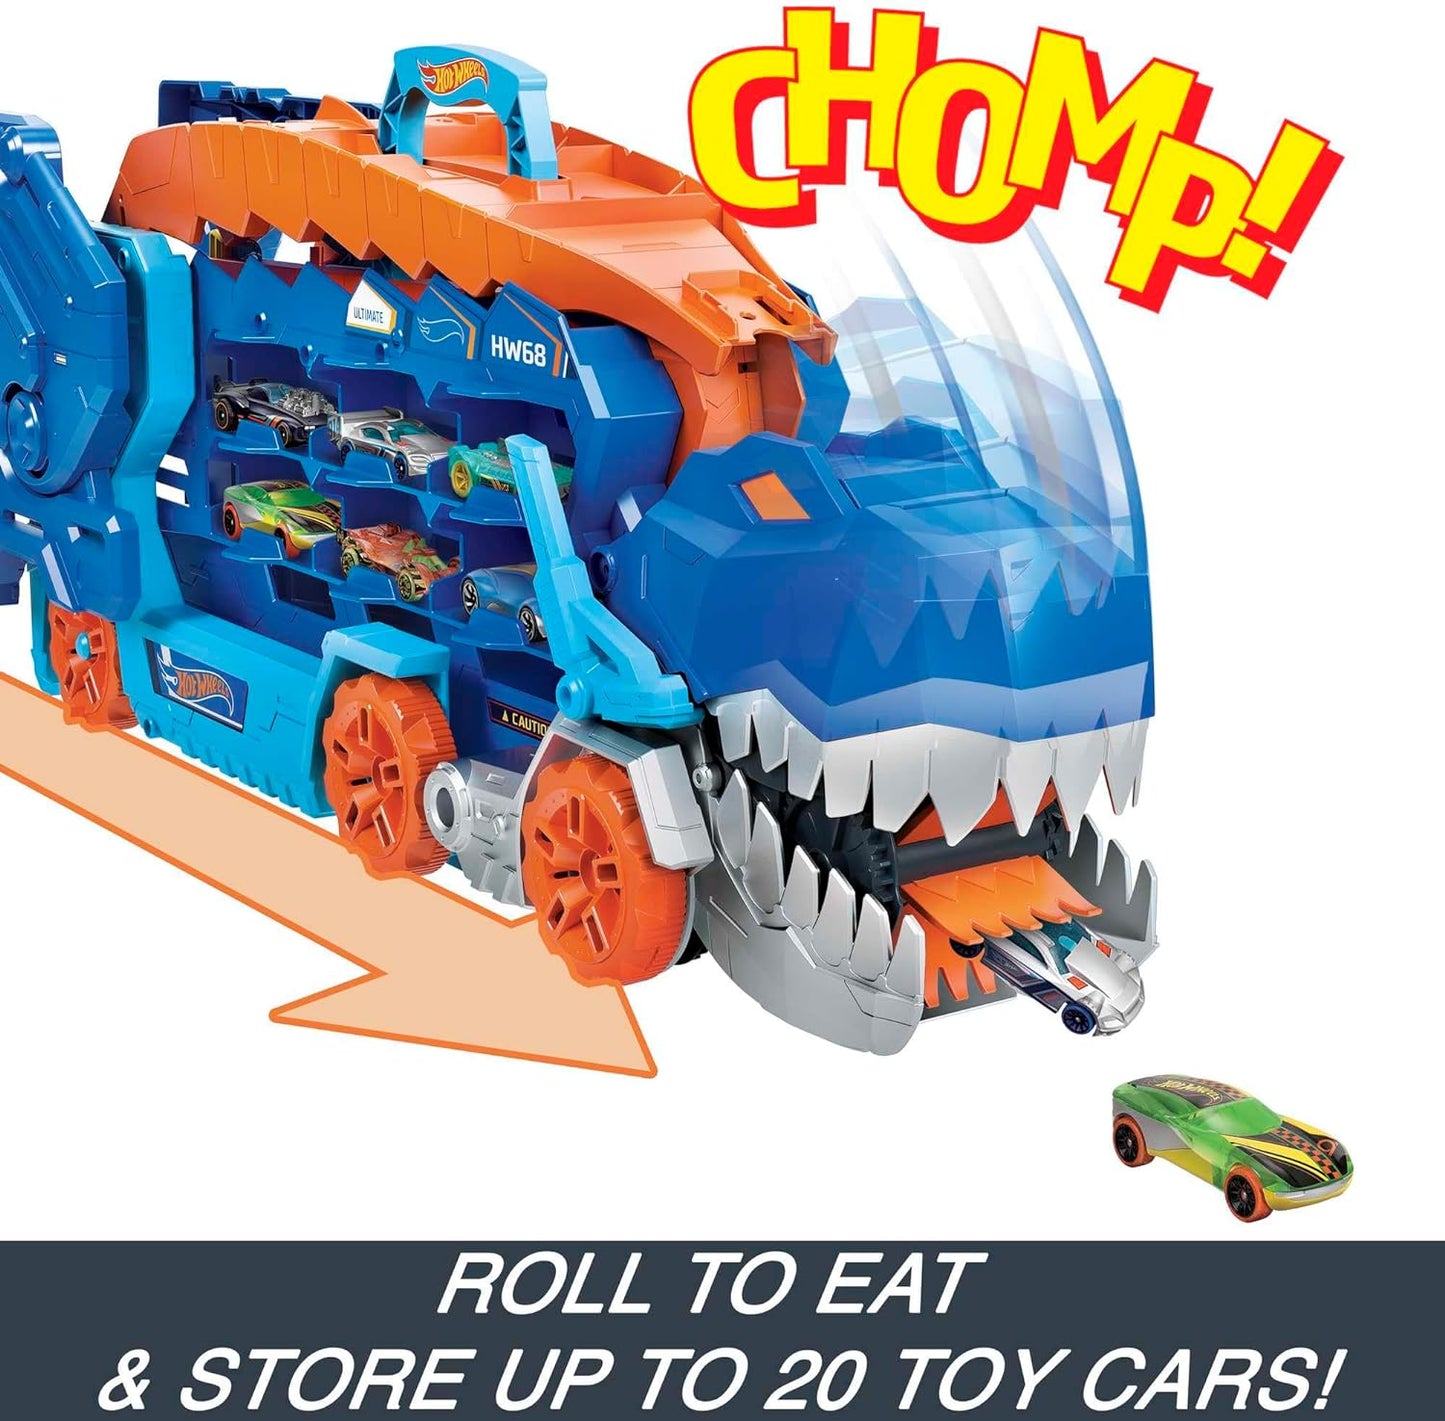 Hot Wheels City Racetrack, Ultimate T-Rex Transporter 2 em 1 com luzes e sons, armazenamento de brinquedos para 20 carros, inclui 2 carros de brinquedo, brinquedos para maiores de 4 anos, um pacote, HNG50